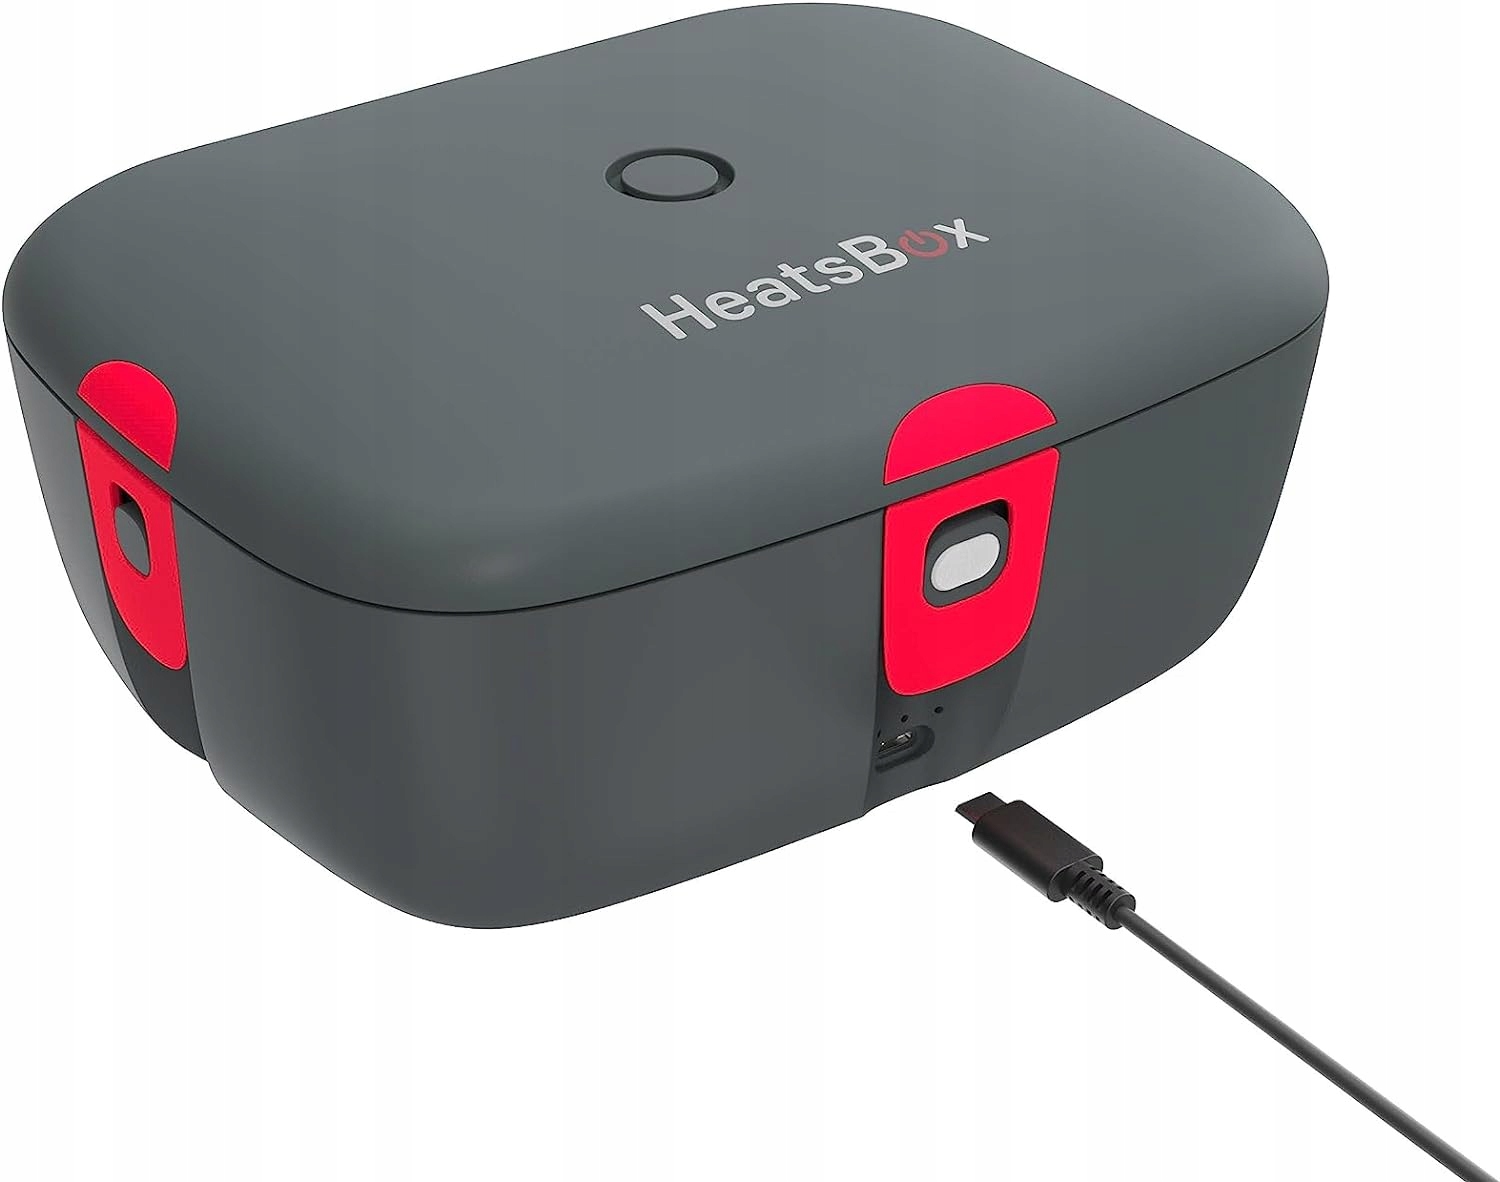 HeatsBox GO samopodgrzewający lunch box - sterowany aplikacją podgrzewany  lunchbox z wbudowanym akumulatorem - Allocacoc Polska 